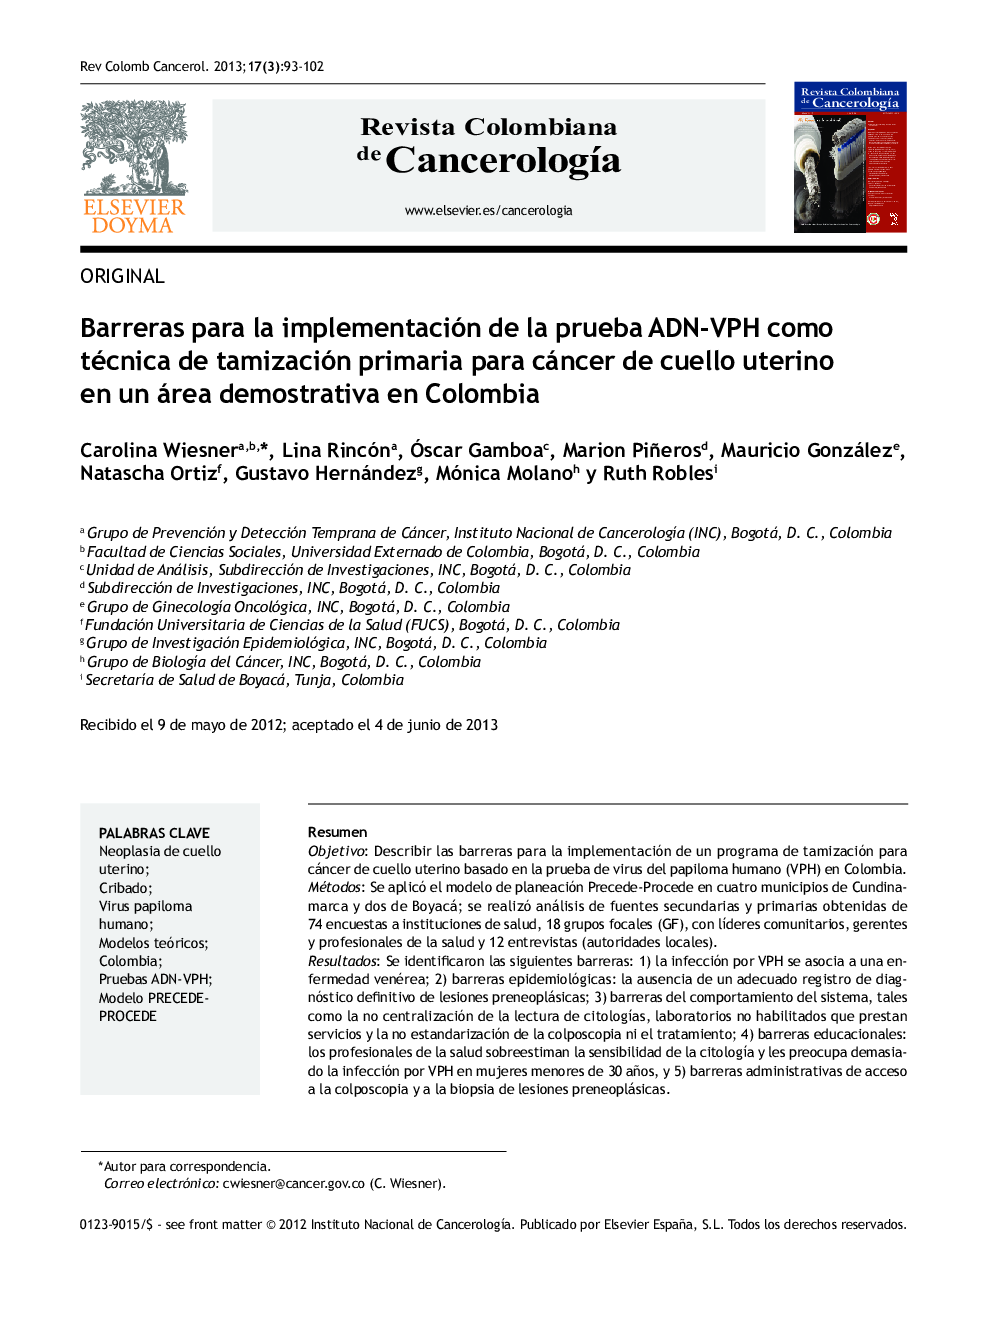 Barreras para la implementación de la prueba ADN-VPH como técnica de tamización primaria para cáncer de cuello uterino en un área demostrativa en Colombia